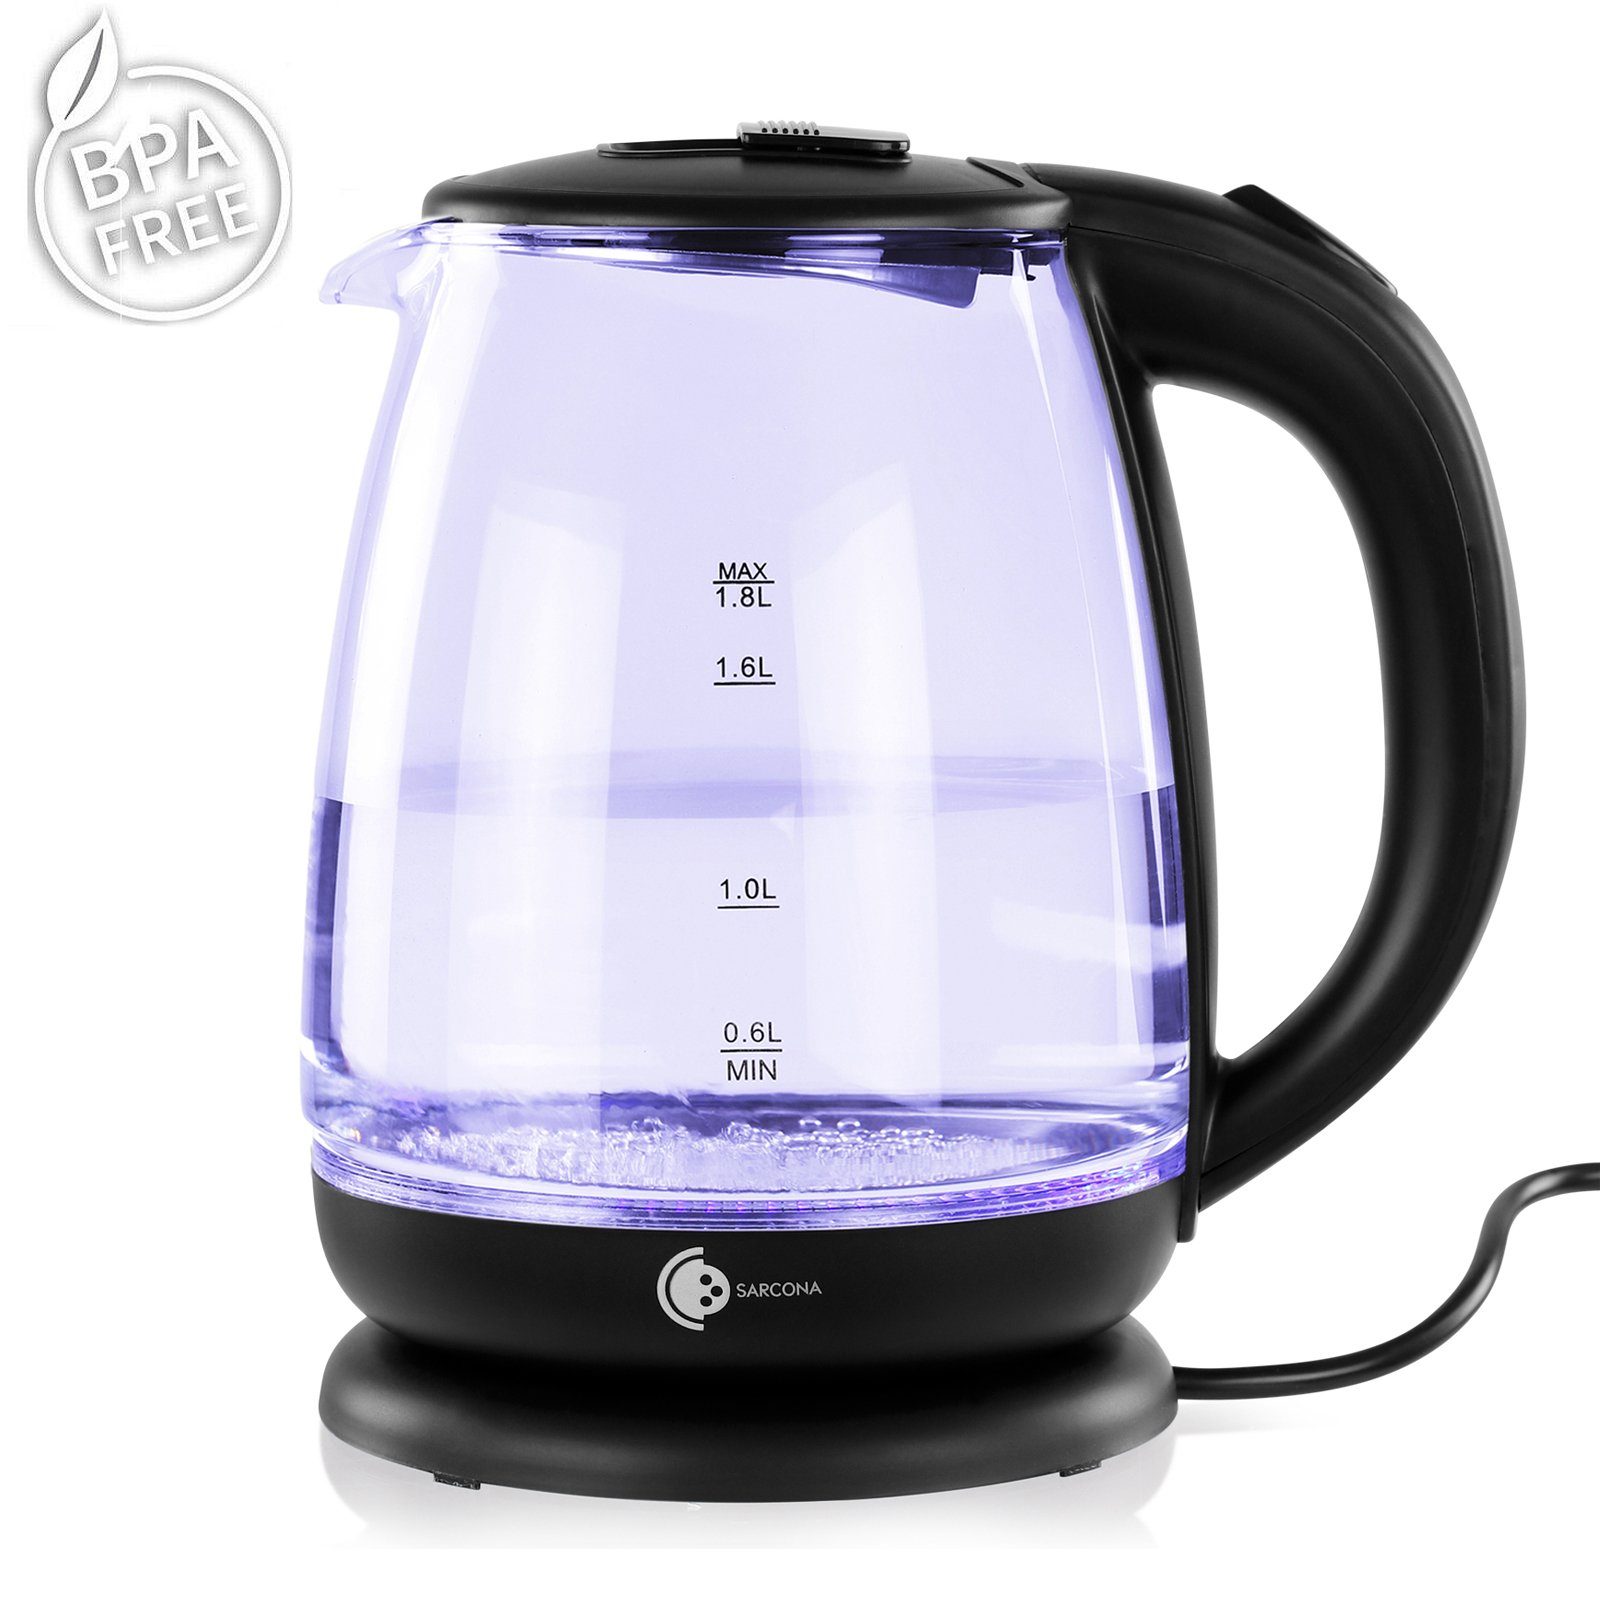 Sarcona Wasserkocher Wasserkocher Schwarz Glas LED Beleuchtung 1,8l 1800W WK10888, 1800,00 W, Glas, 1,8 Liter Fassungsvermögen